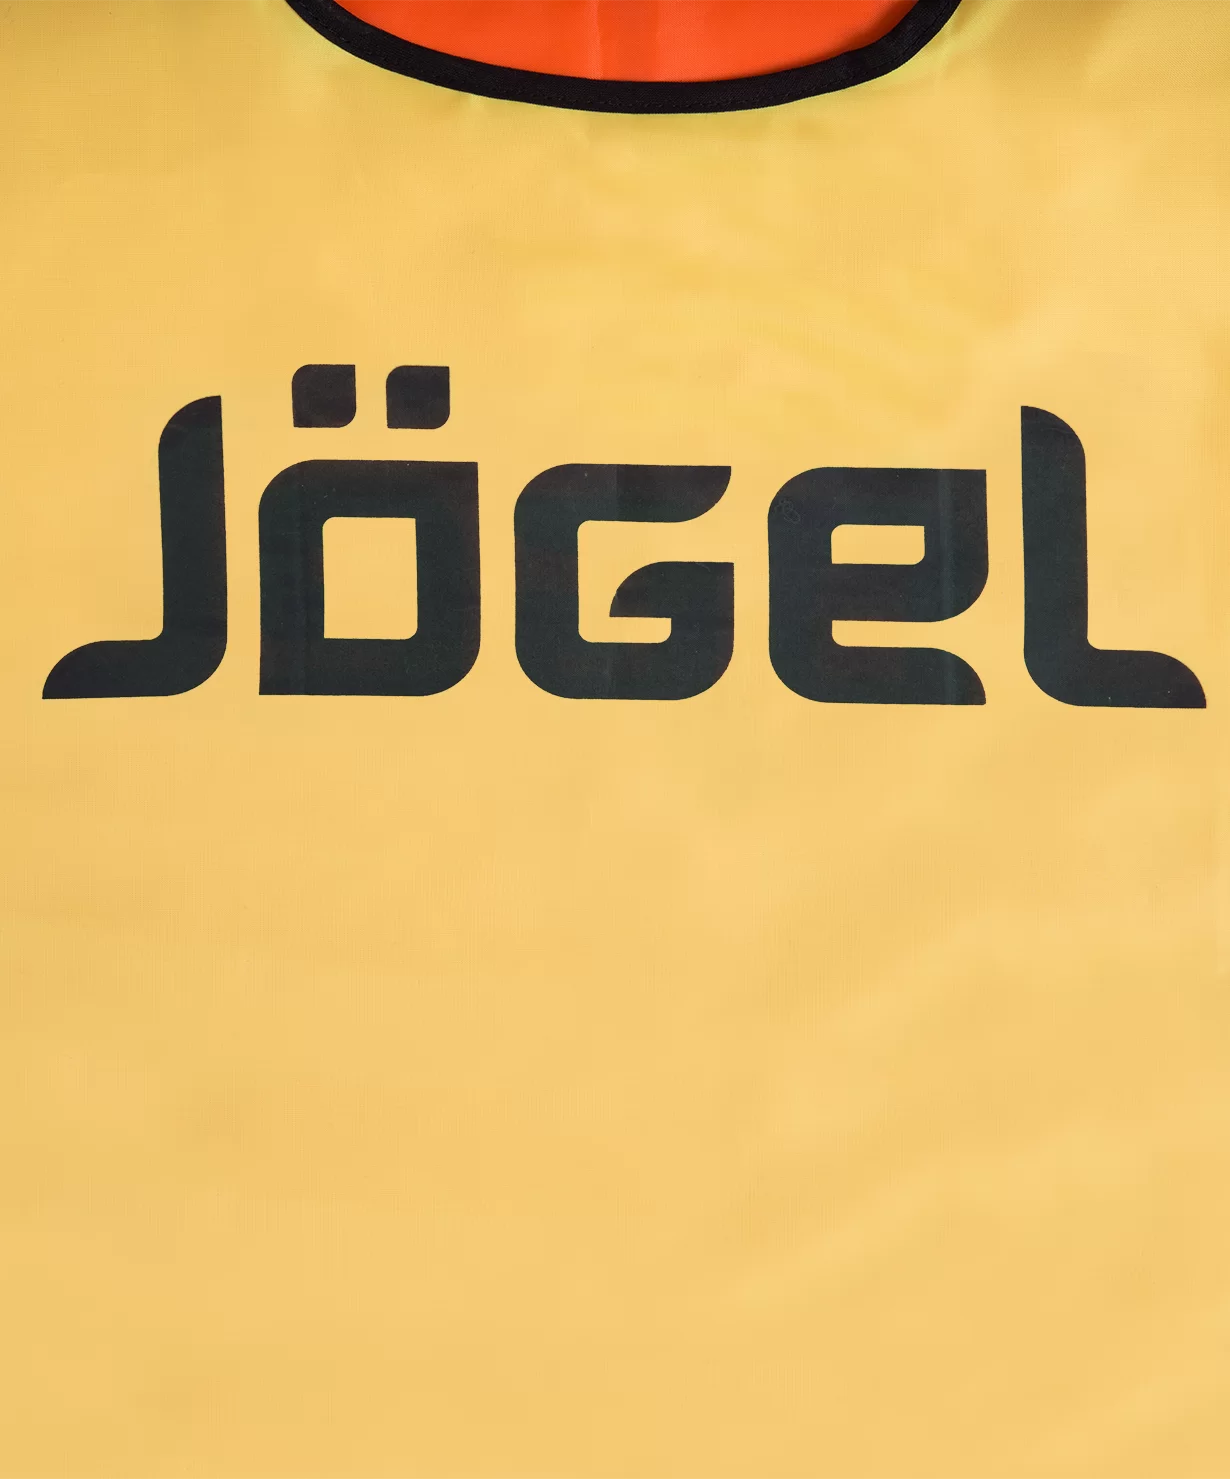 Реальное фото Манишка двустороння Jögel JBIB-2001 взрослая желтый/оранжевый 12367 от магазина СпортСЕ